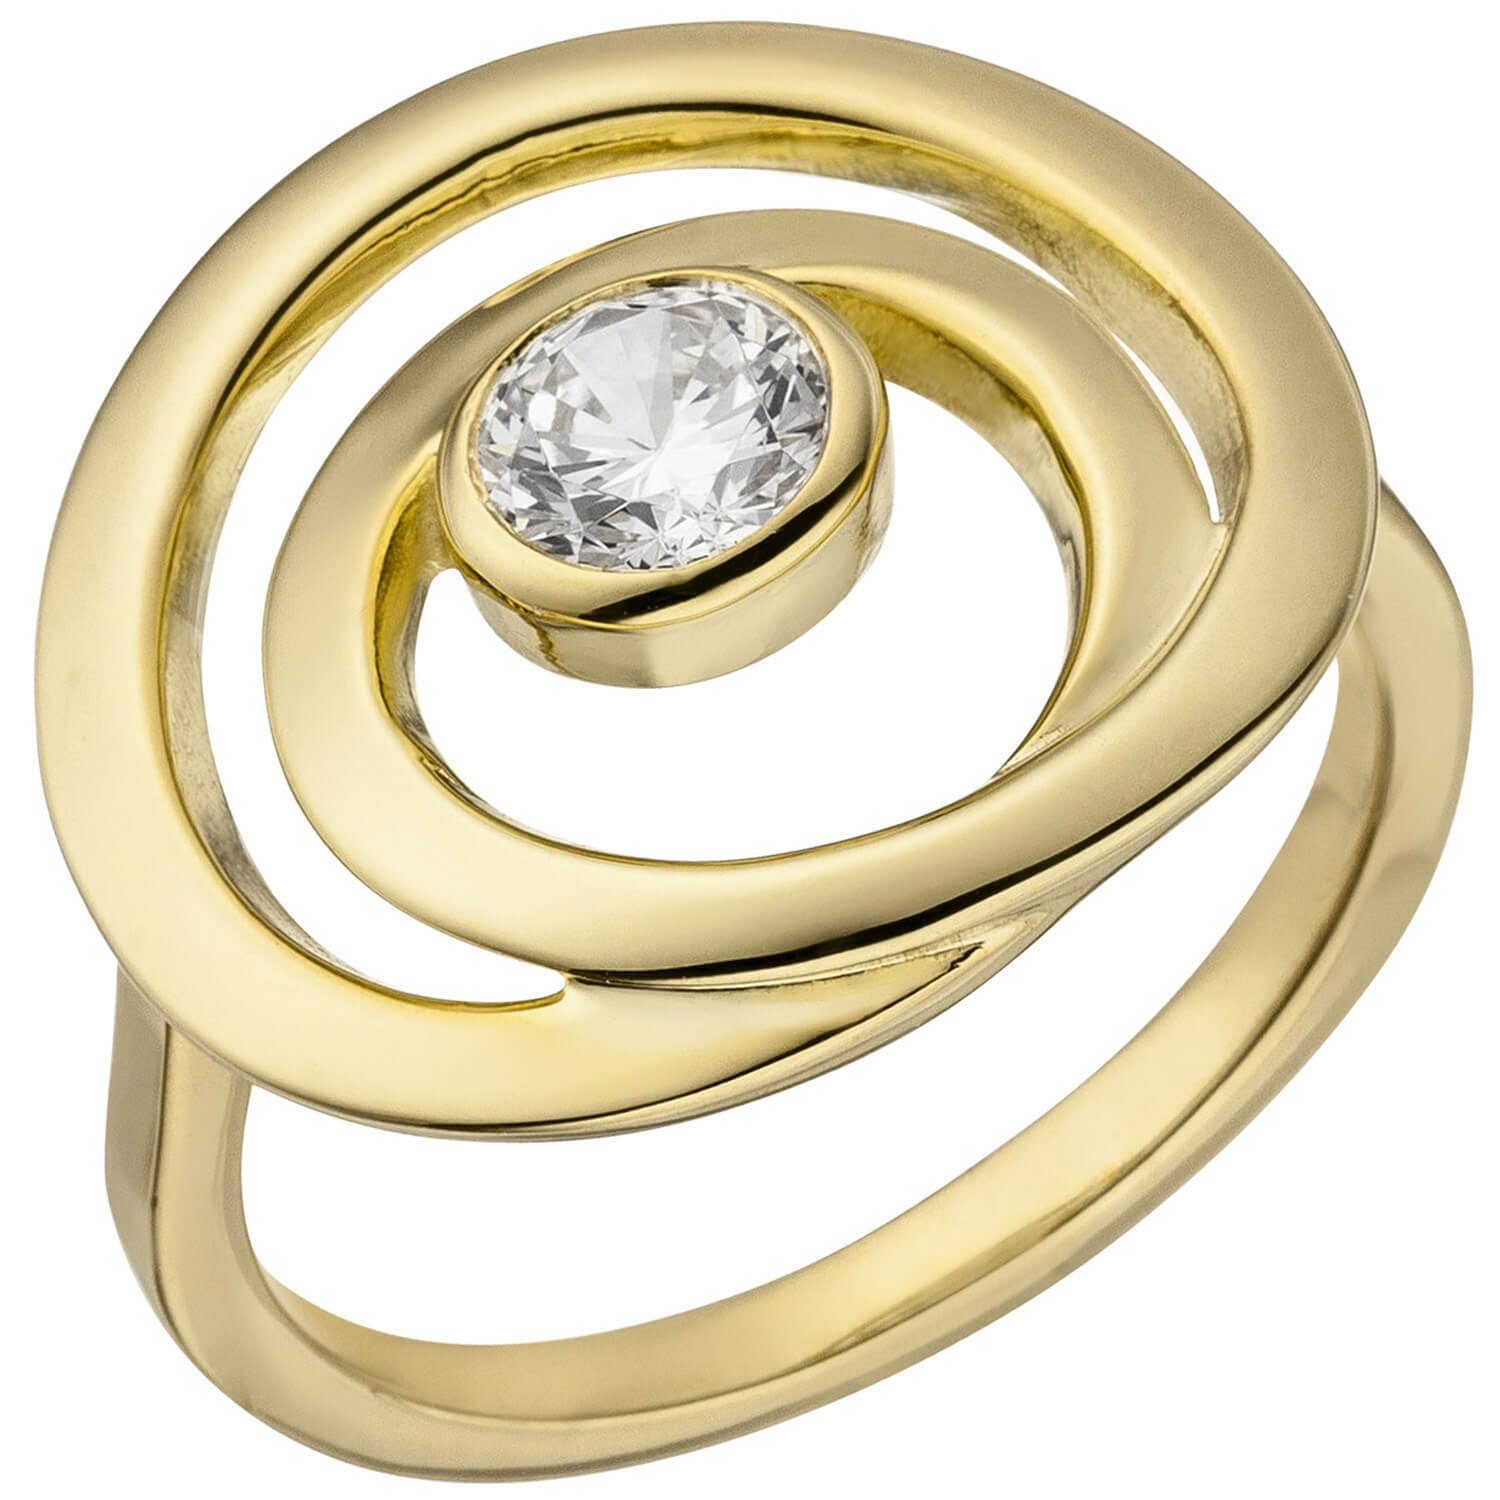 Schmuck Krone Silberring Ring eleganter Damenring weißer Zirkonia in einer Spirale, 925 Silber vergoldet, Silber 925